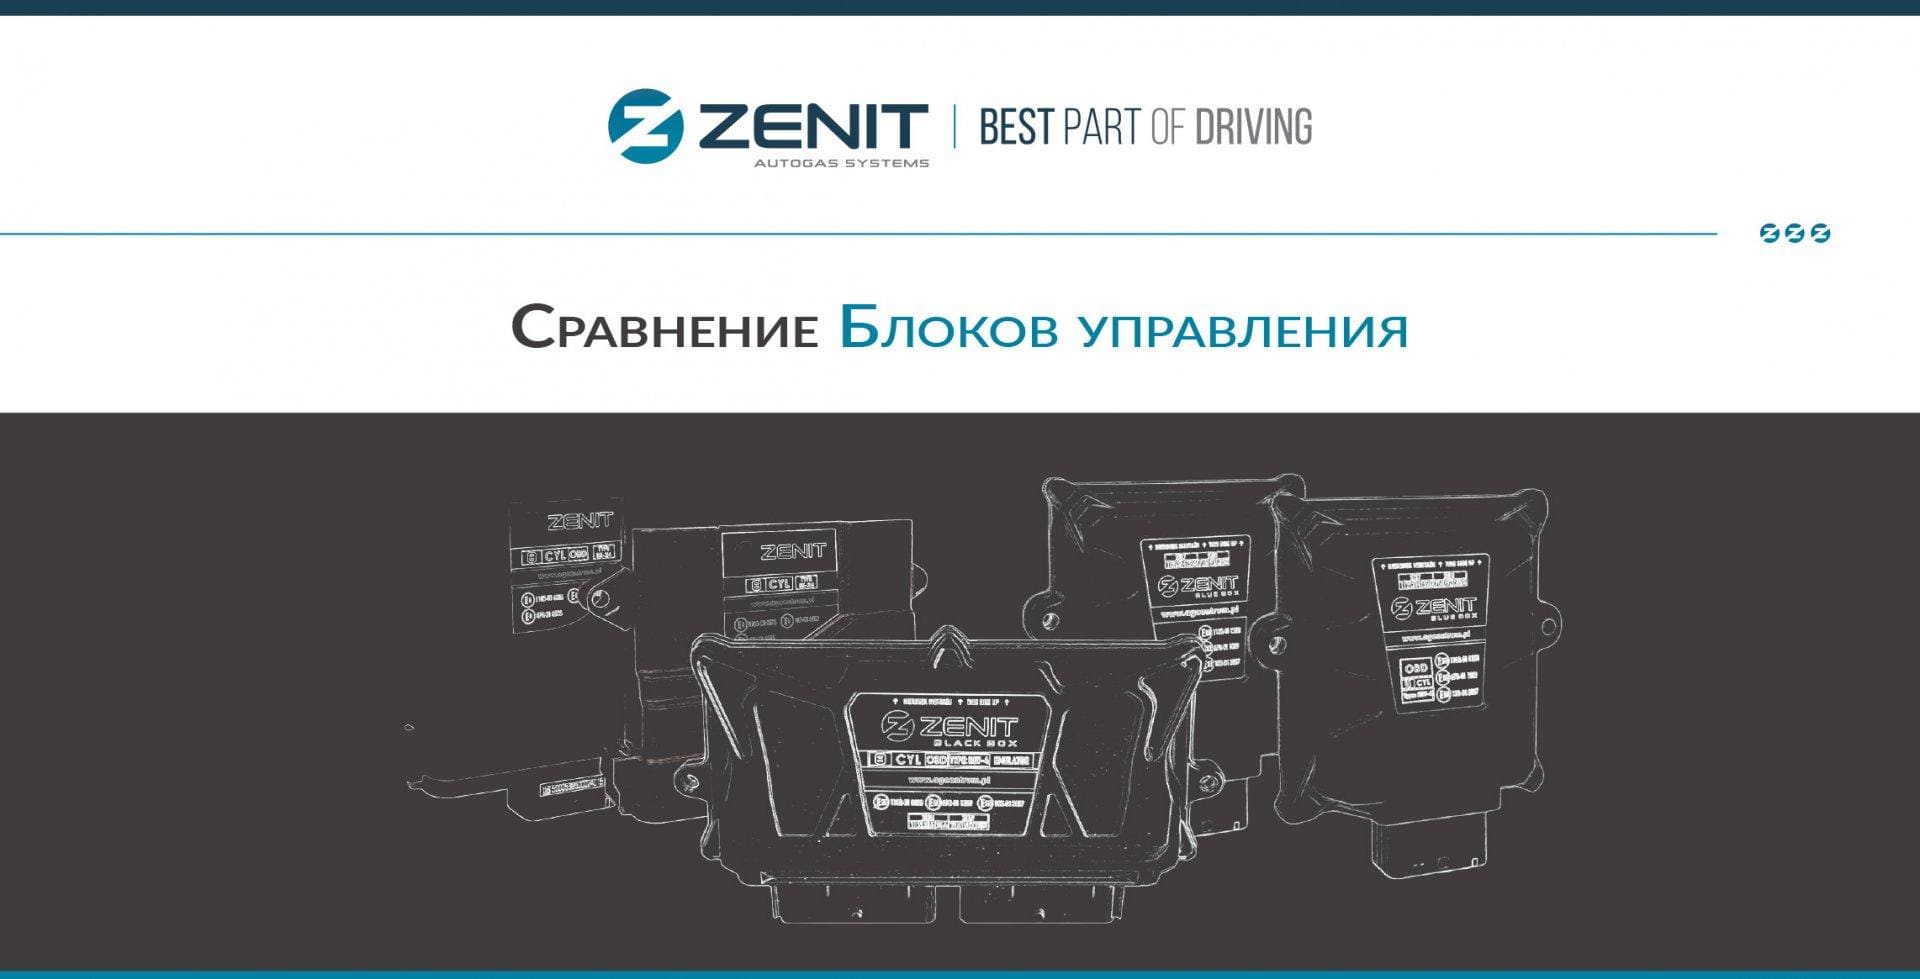 Сравнение блоков управления Zenit